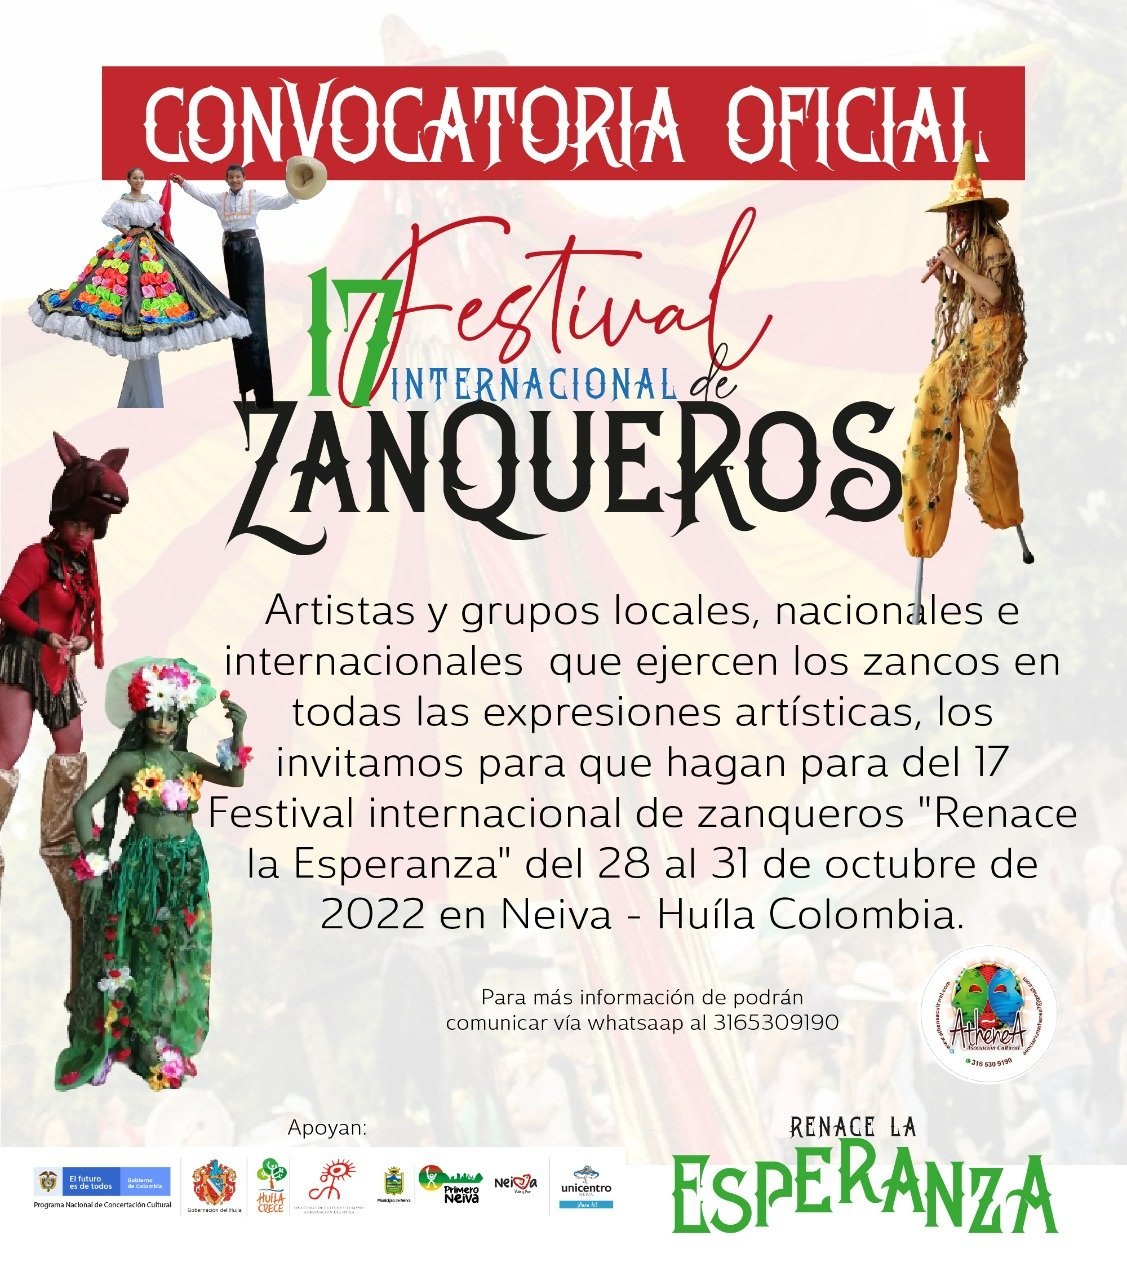 18 FESTIVAL INTERNACIONAL DE ZANQUEROS "RENACE LA ESPERANZA" 